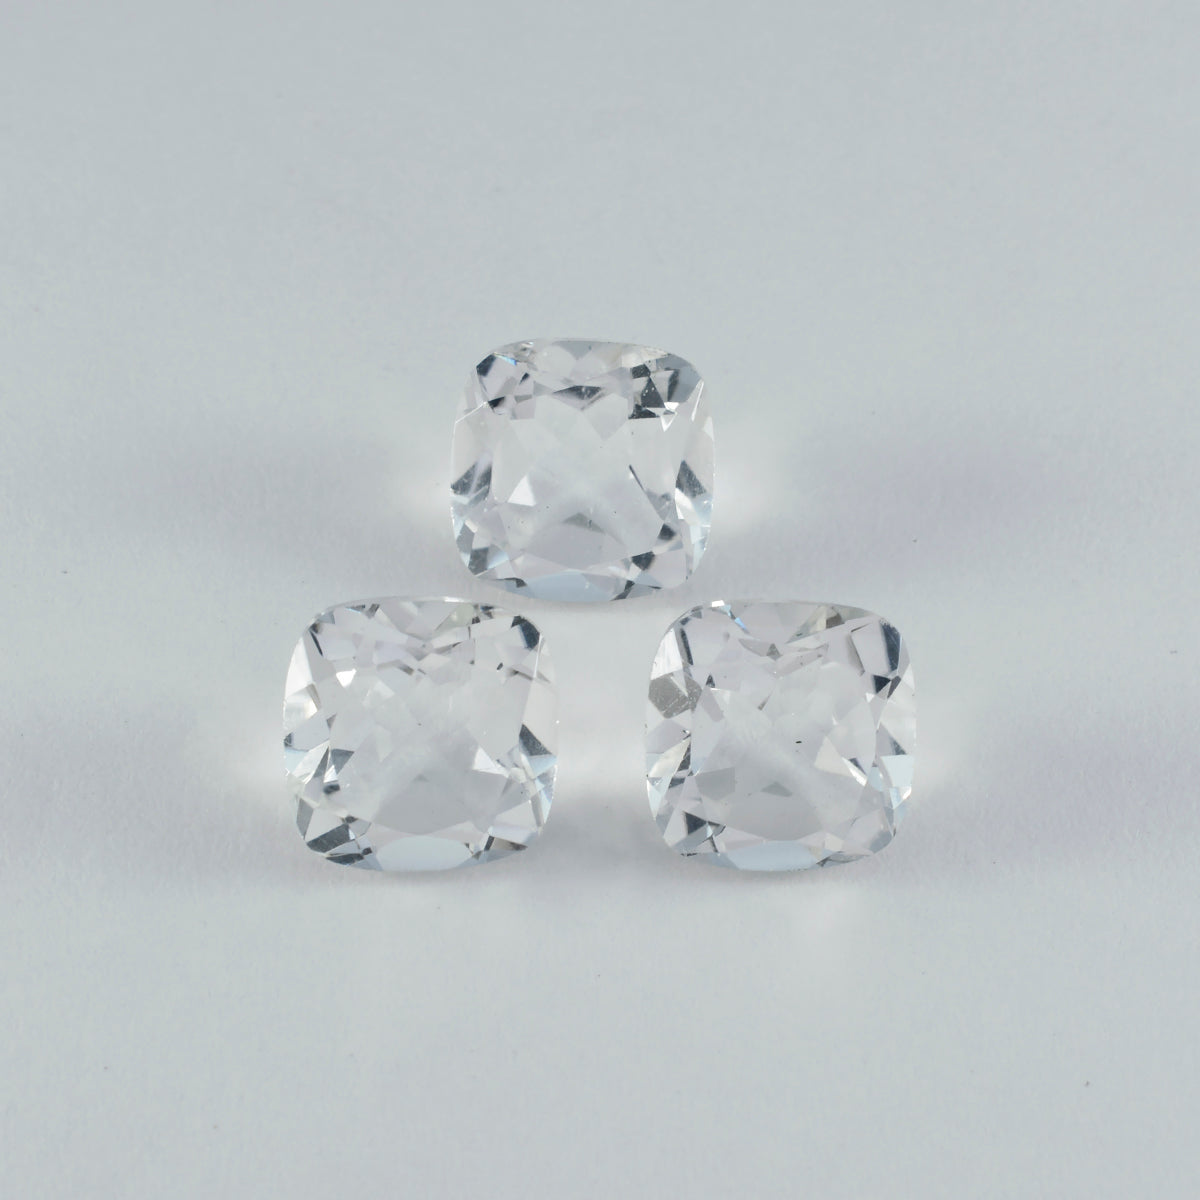 Riyogems 1 pieza de cuarzo cristal blanco facetado 11x11 mm forma de cojín piedra preciosa suelta de excelente calidad